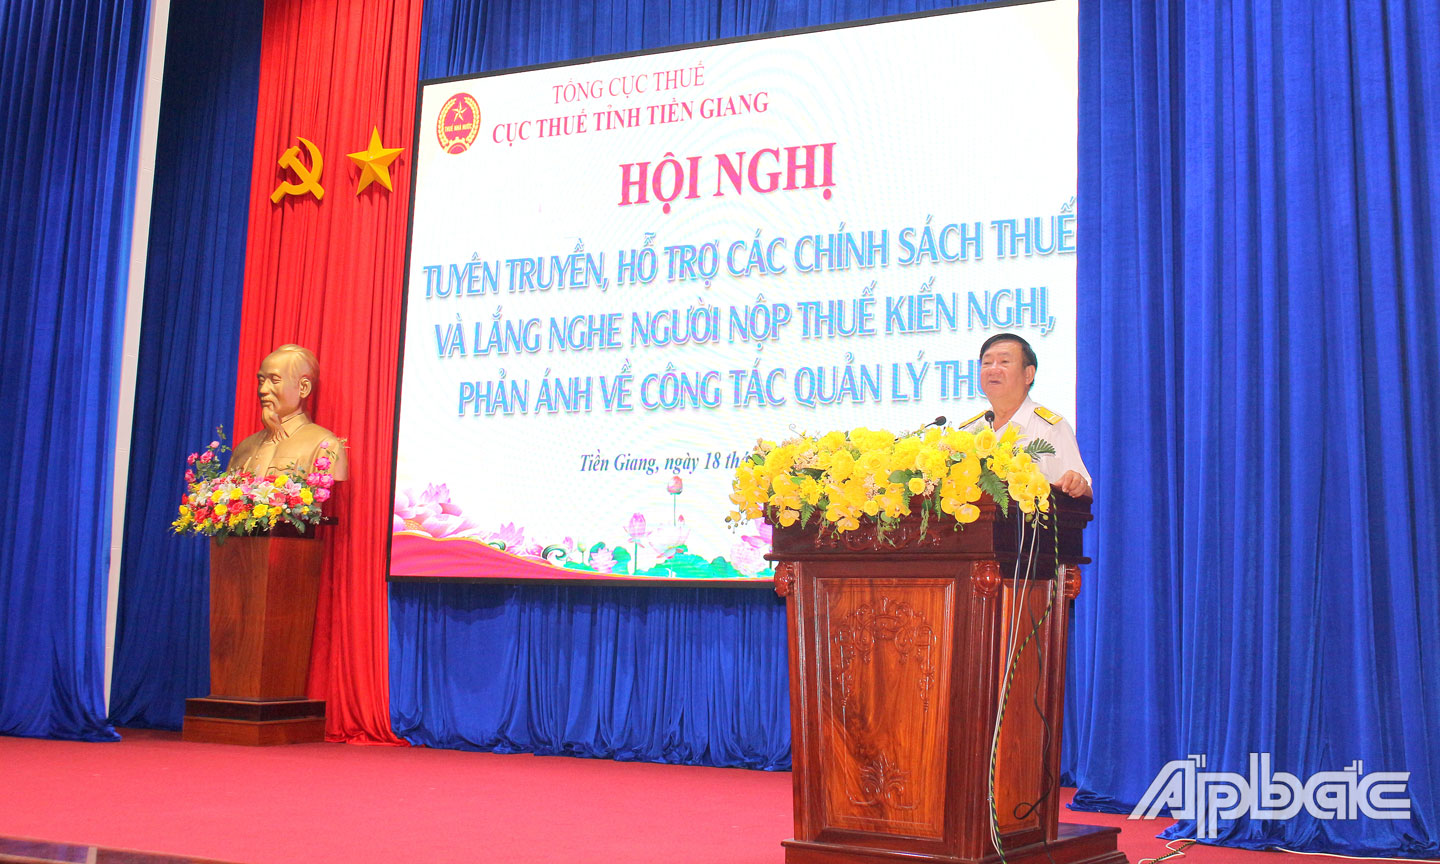 Phó cục Trưởng Cục Thuế tỉnh Tiền Giang Nguyễn Quốc Sơn giải đáp vướng mắc cho người nộp thuế.